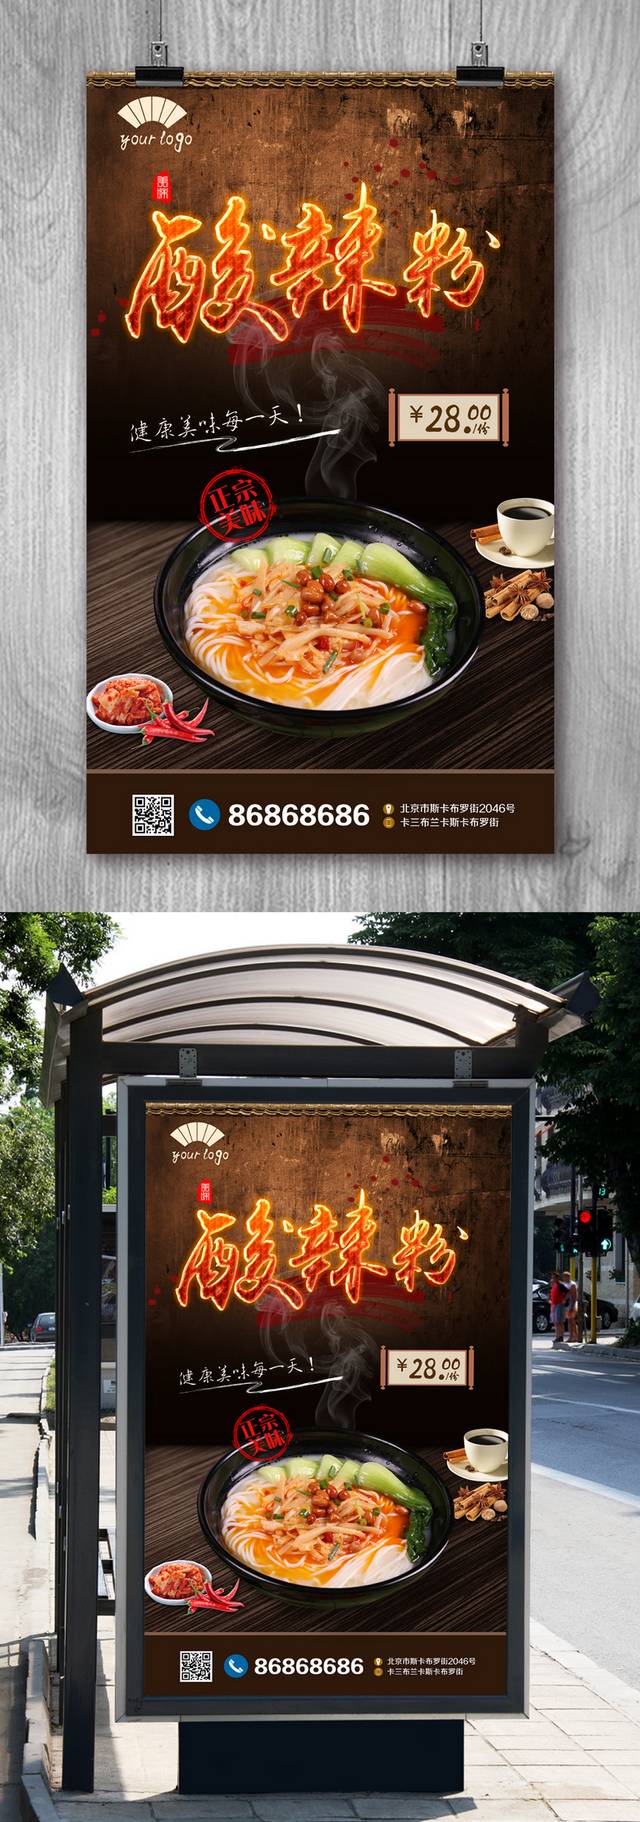 酸辣粉餐饮美食广告设计海报